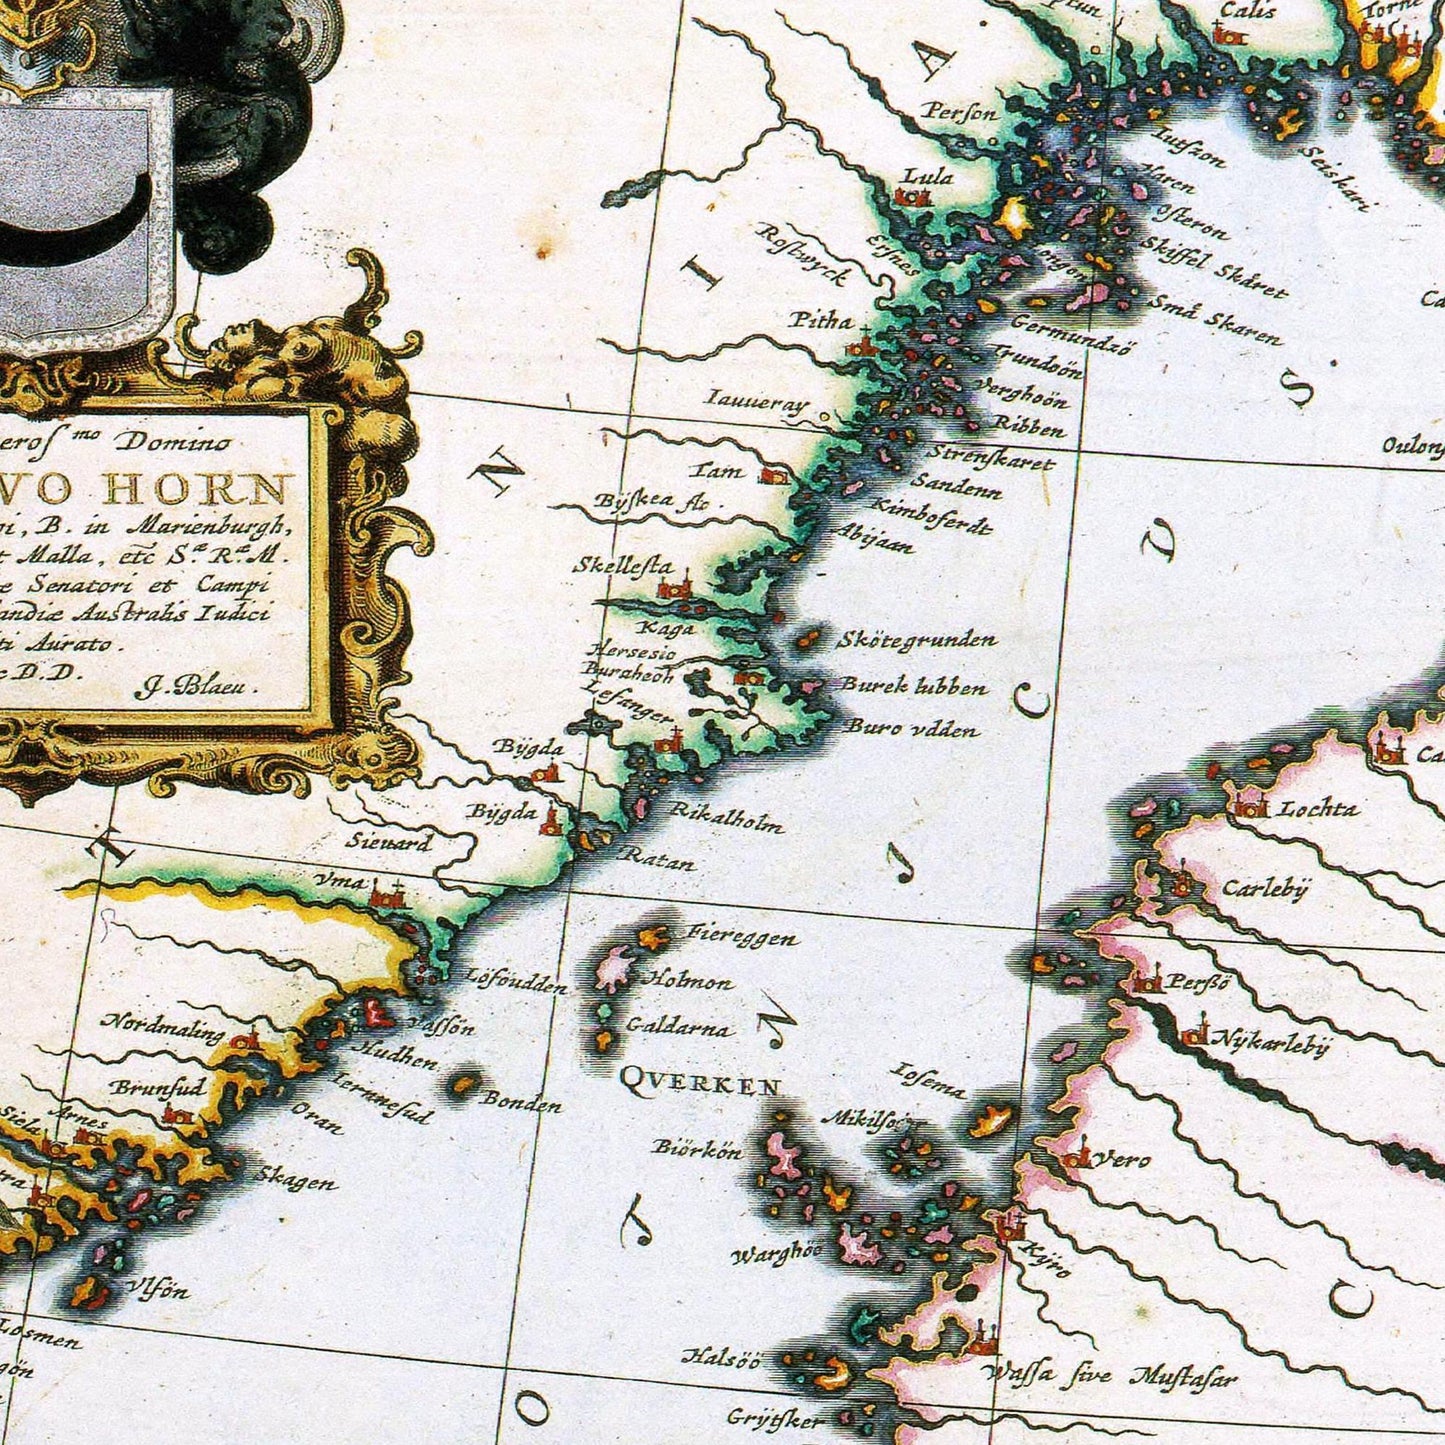 Historische Landkarte Finnland um 1690